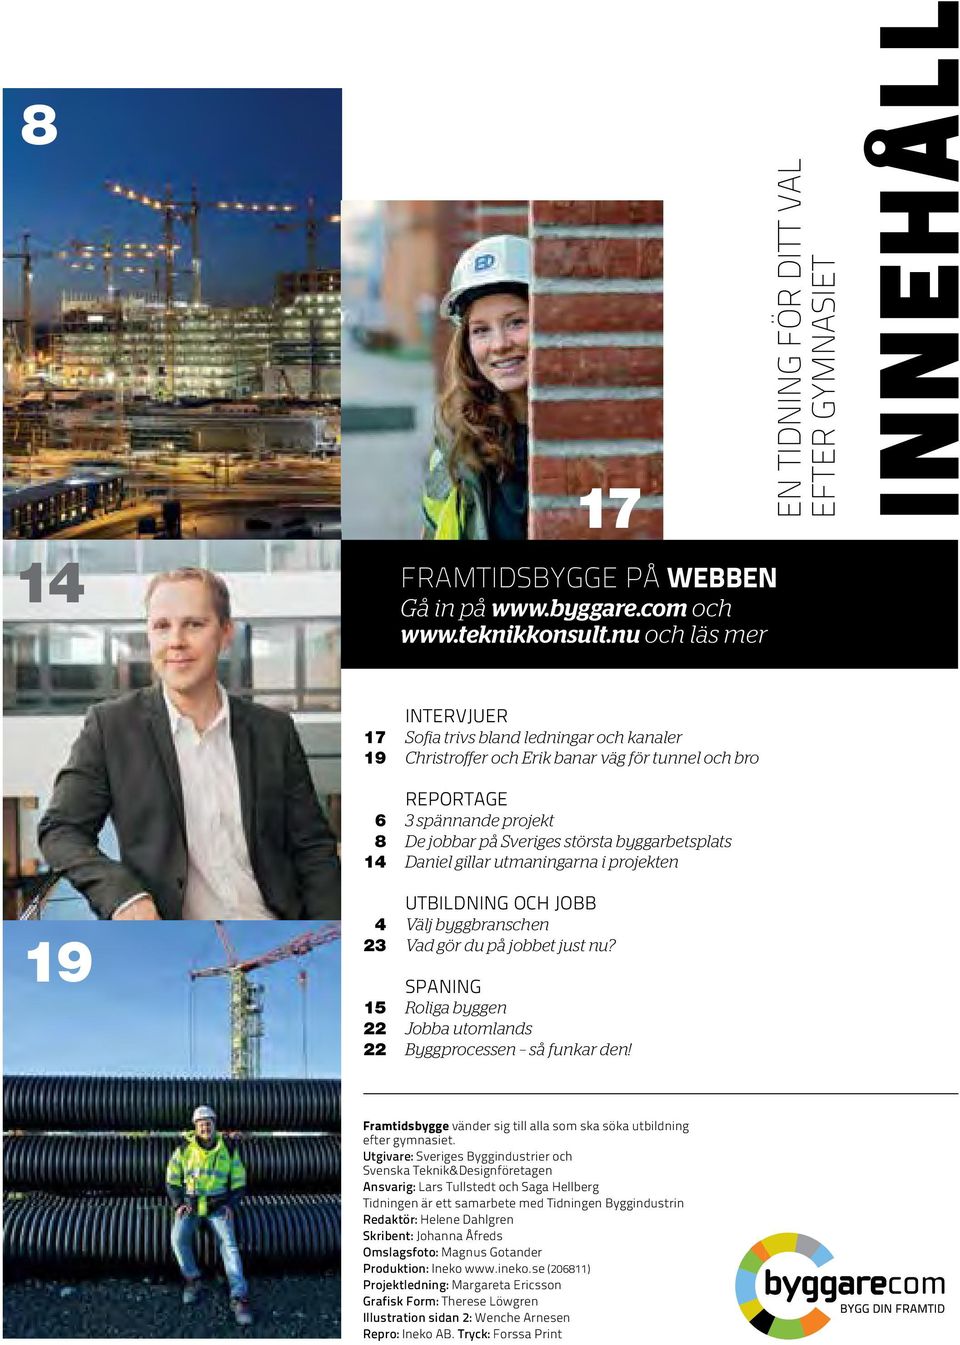 projekt 8 De jobbar på Sveriges största byggarbetsplats 14 Daniel gillar utmaningarna i projekten utbildning och jobb 4 Välj byggbranschen 23 Vad gör du på jobbet just nu?